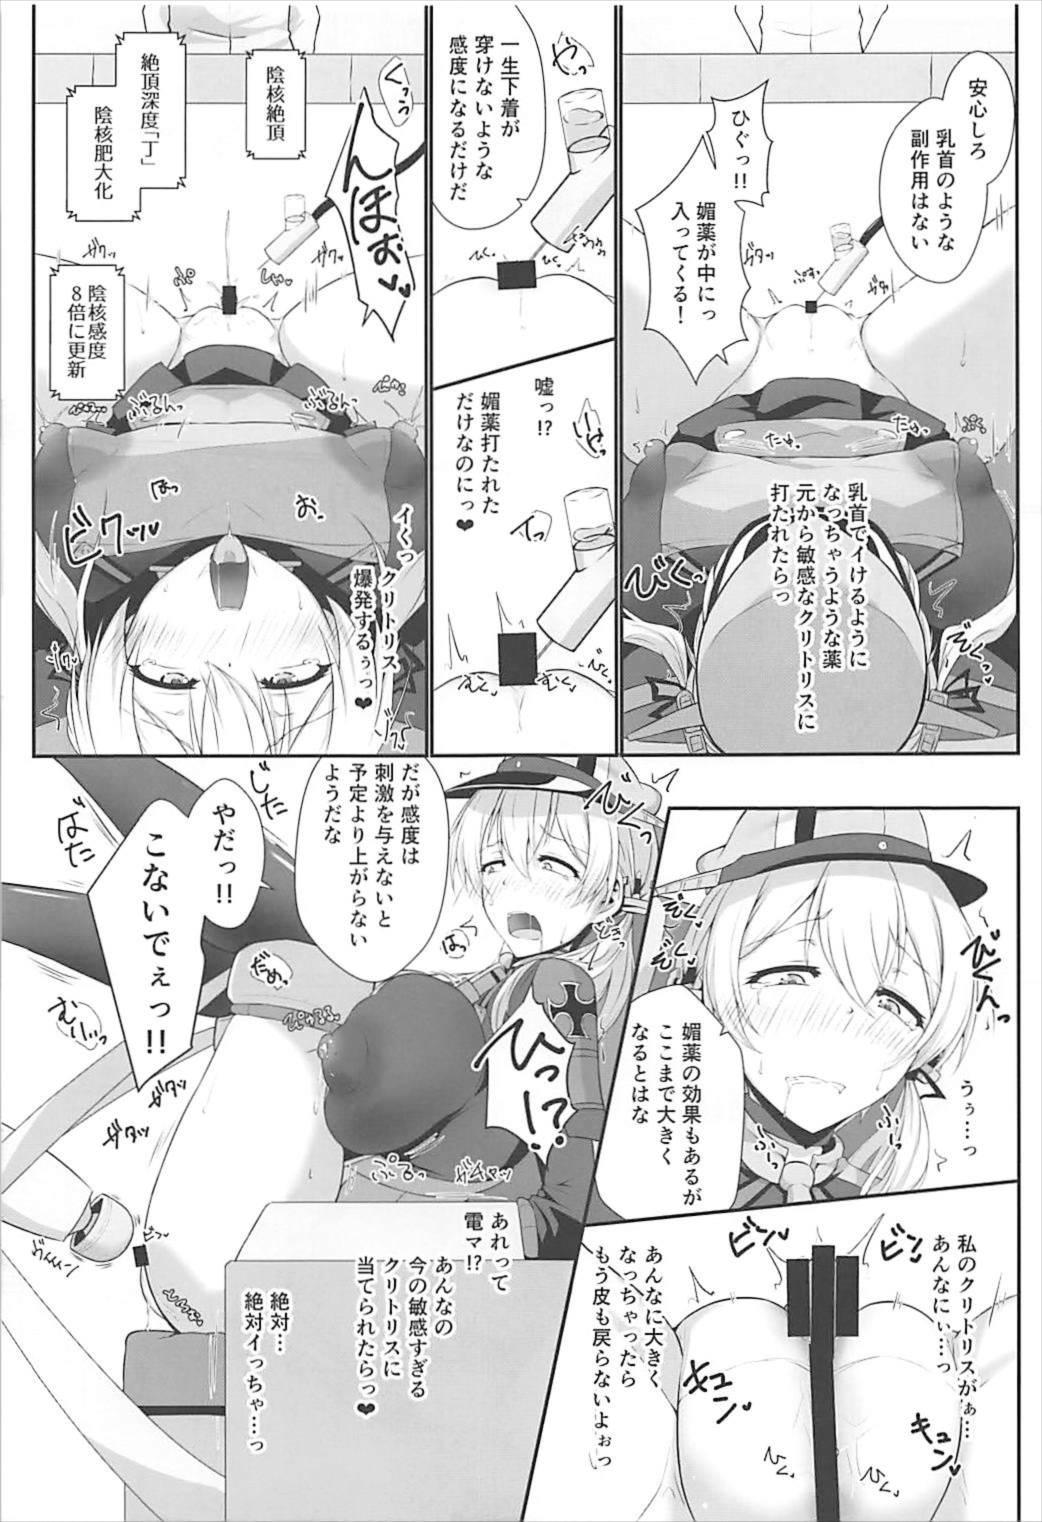 Slapping Doitsukan wa Kikaikan ni Kussuru Hazu ga Nain dakara! - Kantai collection Suckingdick - Page 7